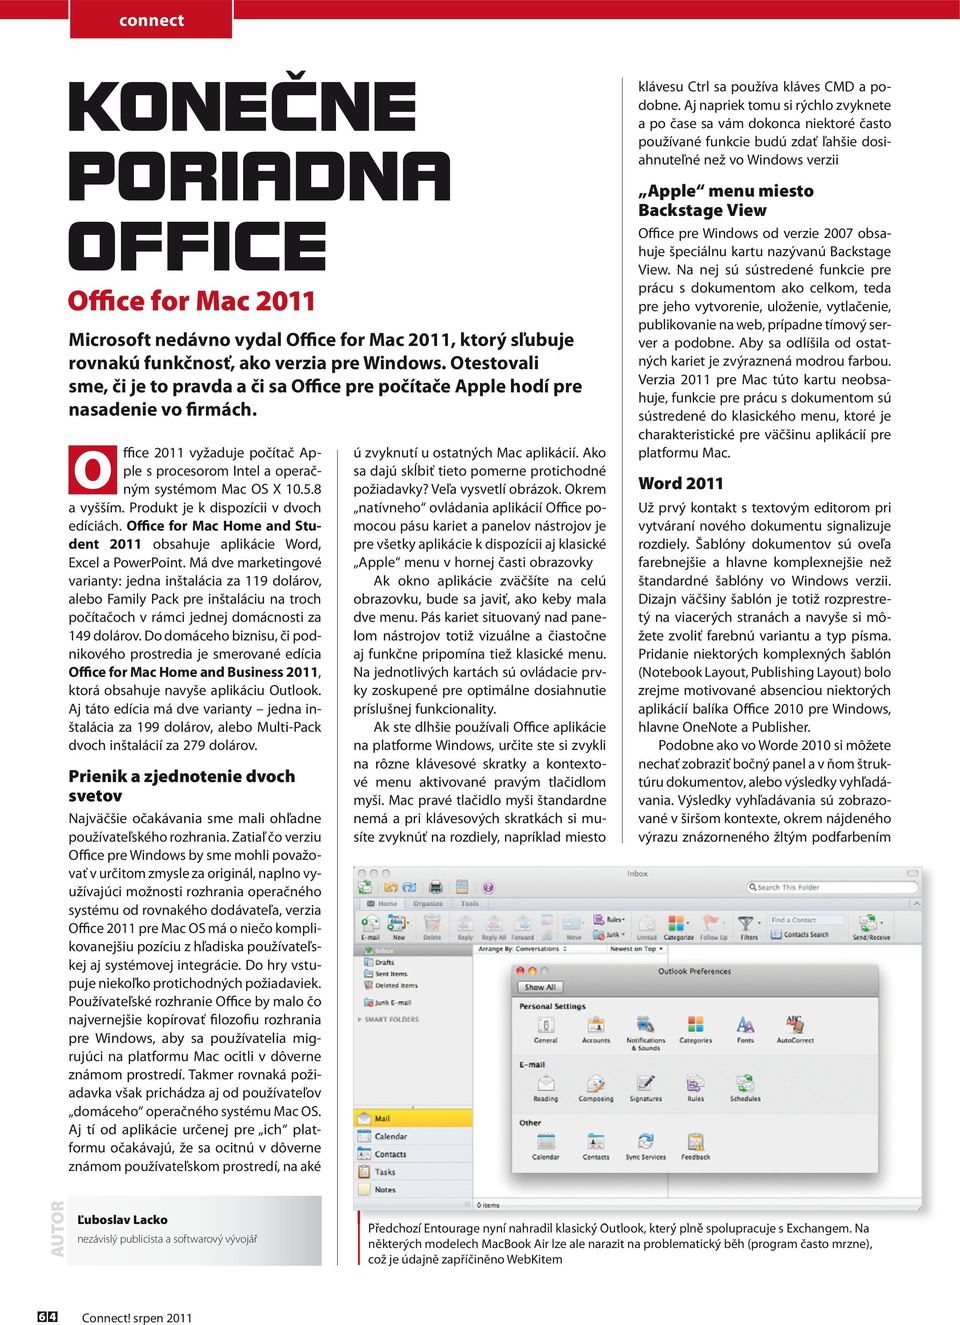 Produkt je k dispozícii v dvoch edíciách. Office for Mac Home and Student 2011 obsahuje aplikácie Word, Excel a PowerPoint.